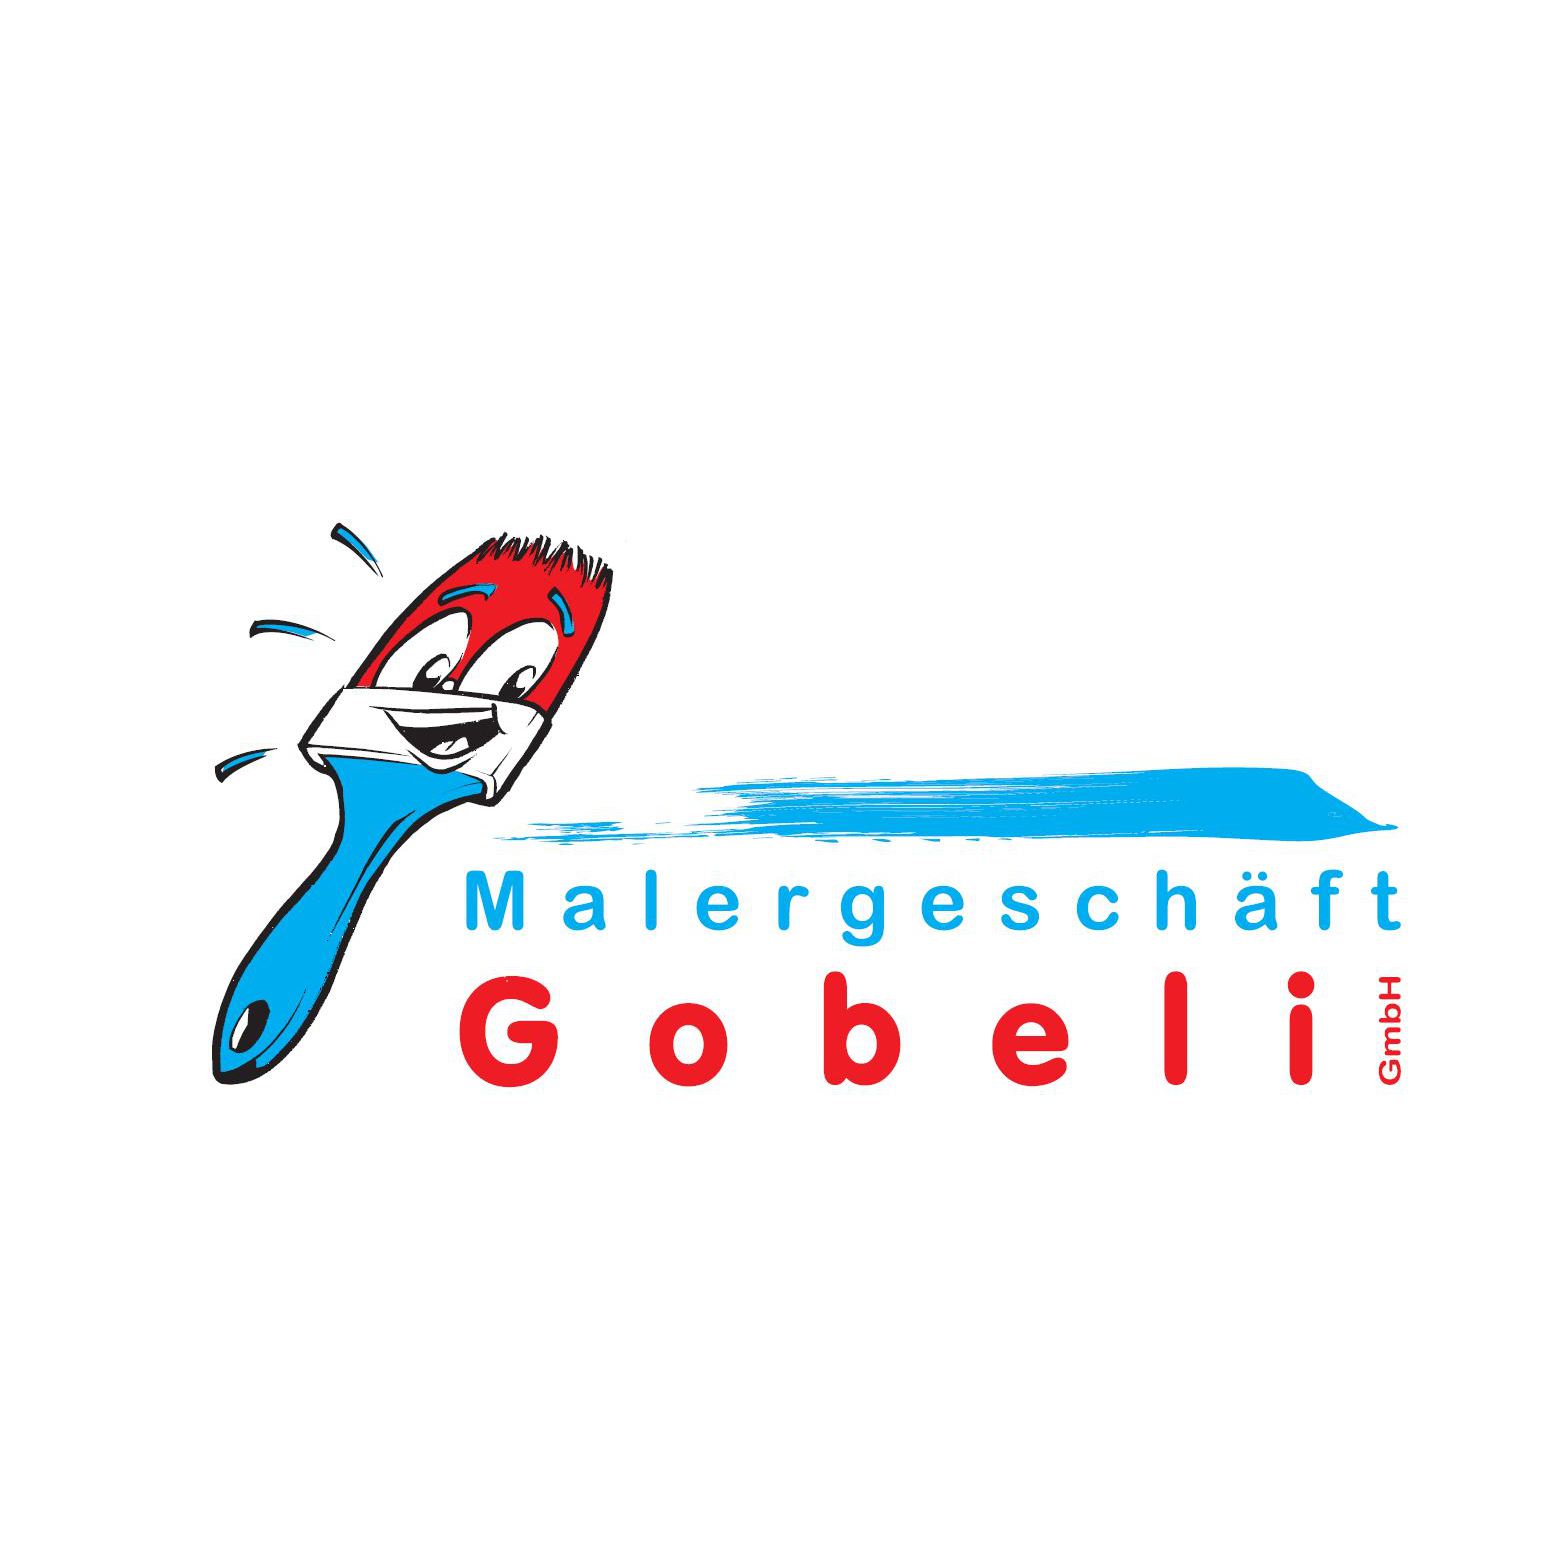 Malergeschäft Gobeli GmbH Logo